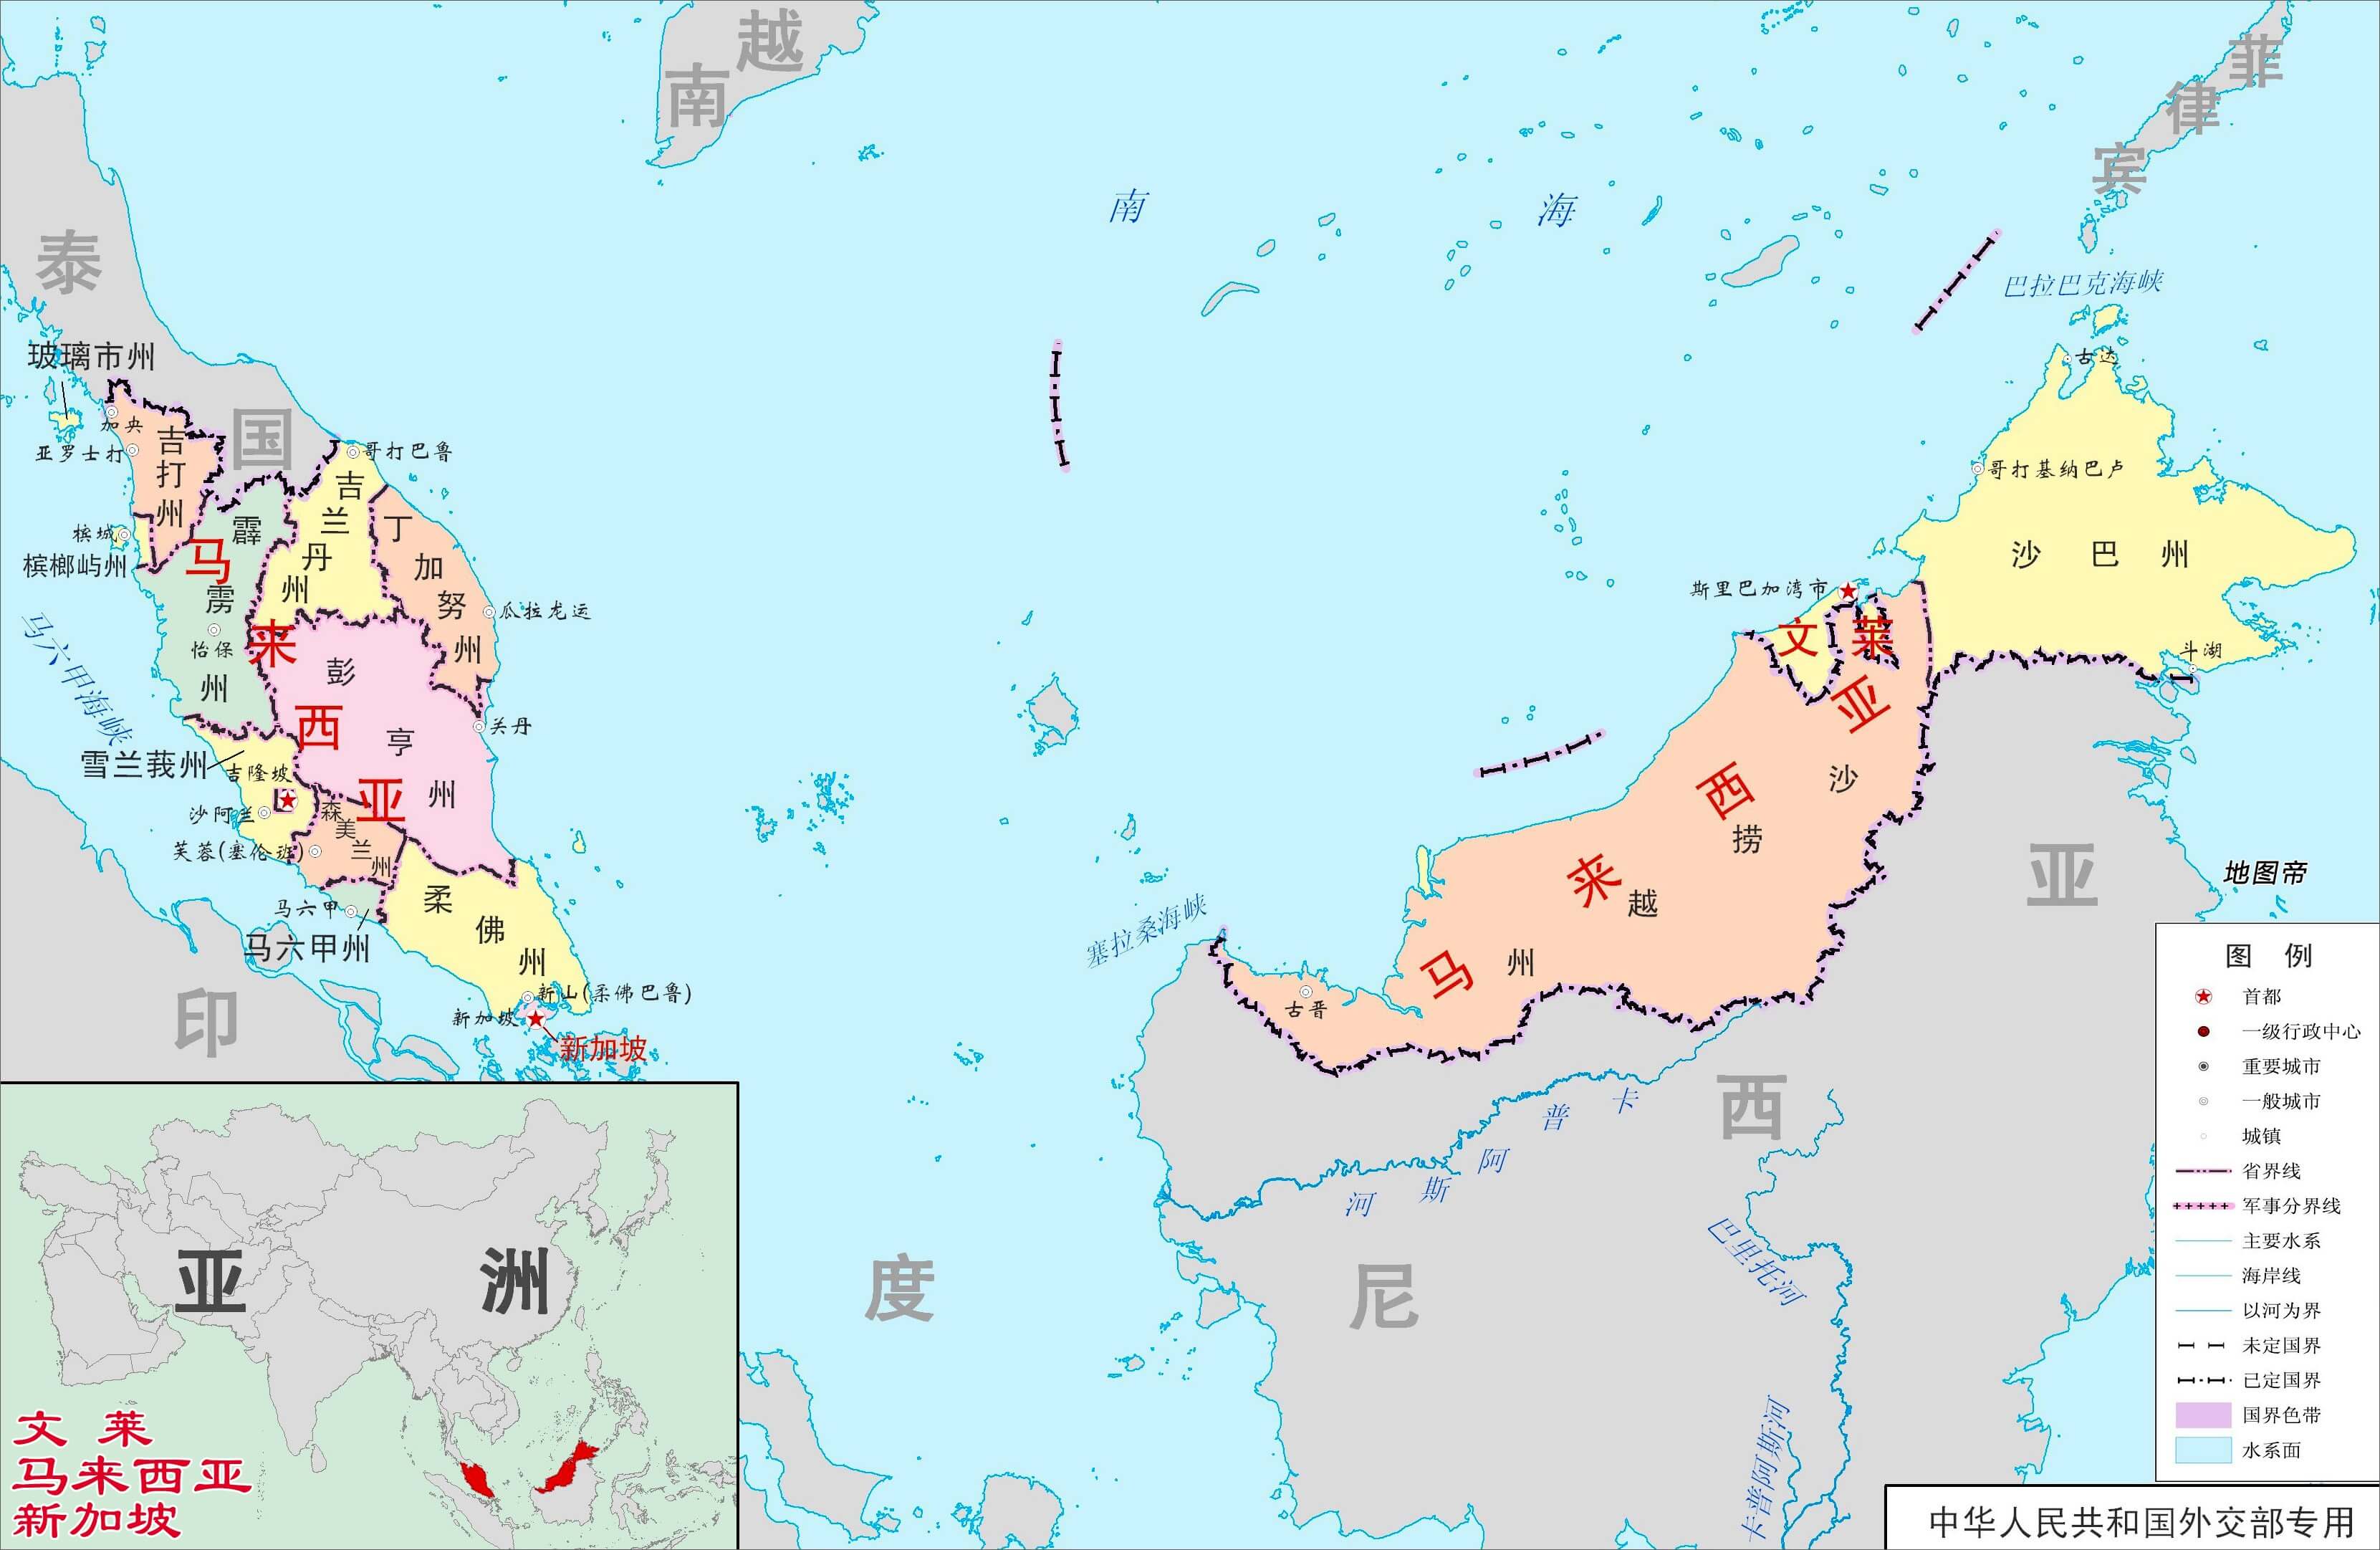 马来西亚大区划分.jpg